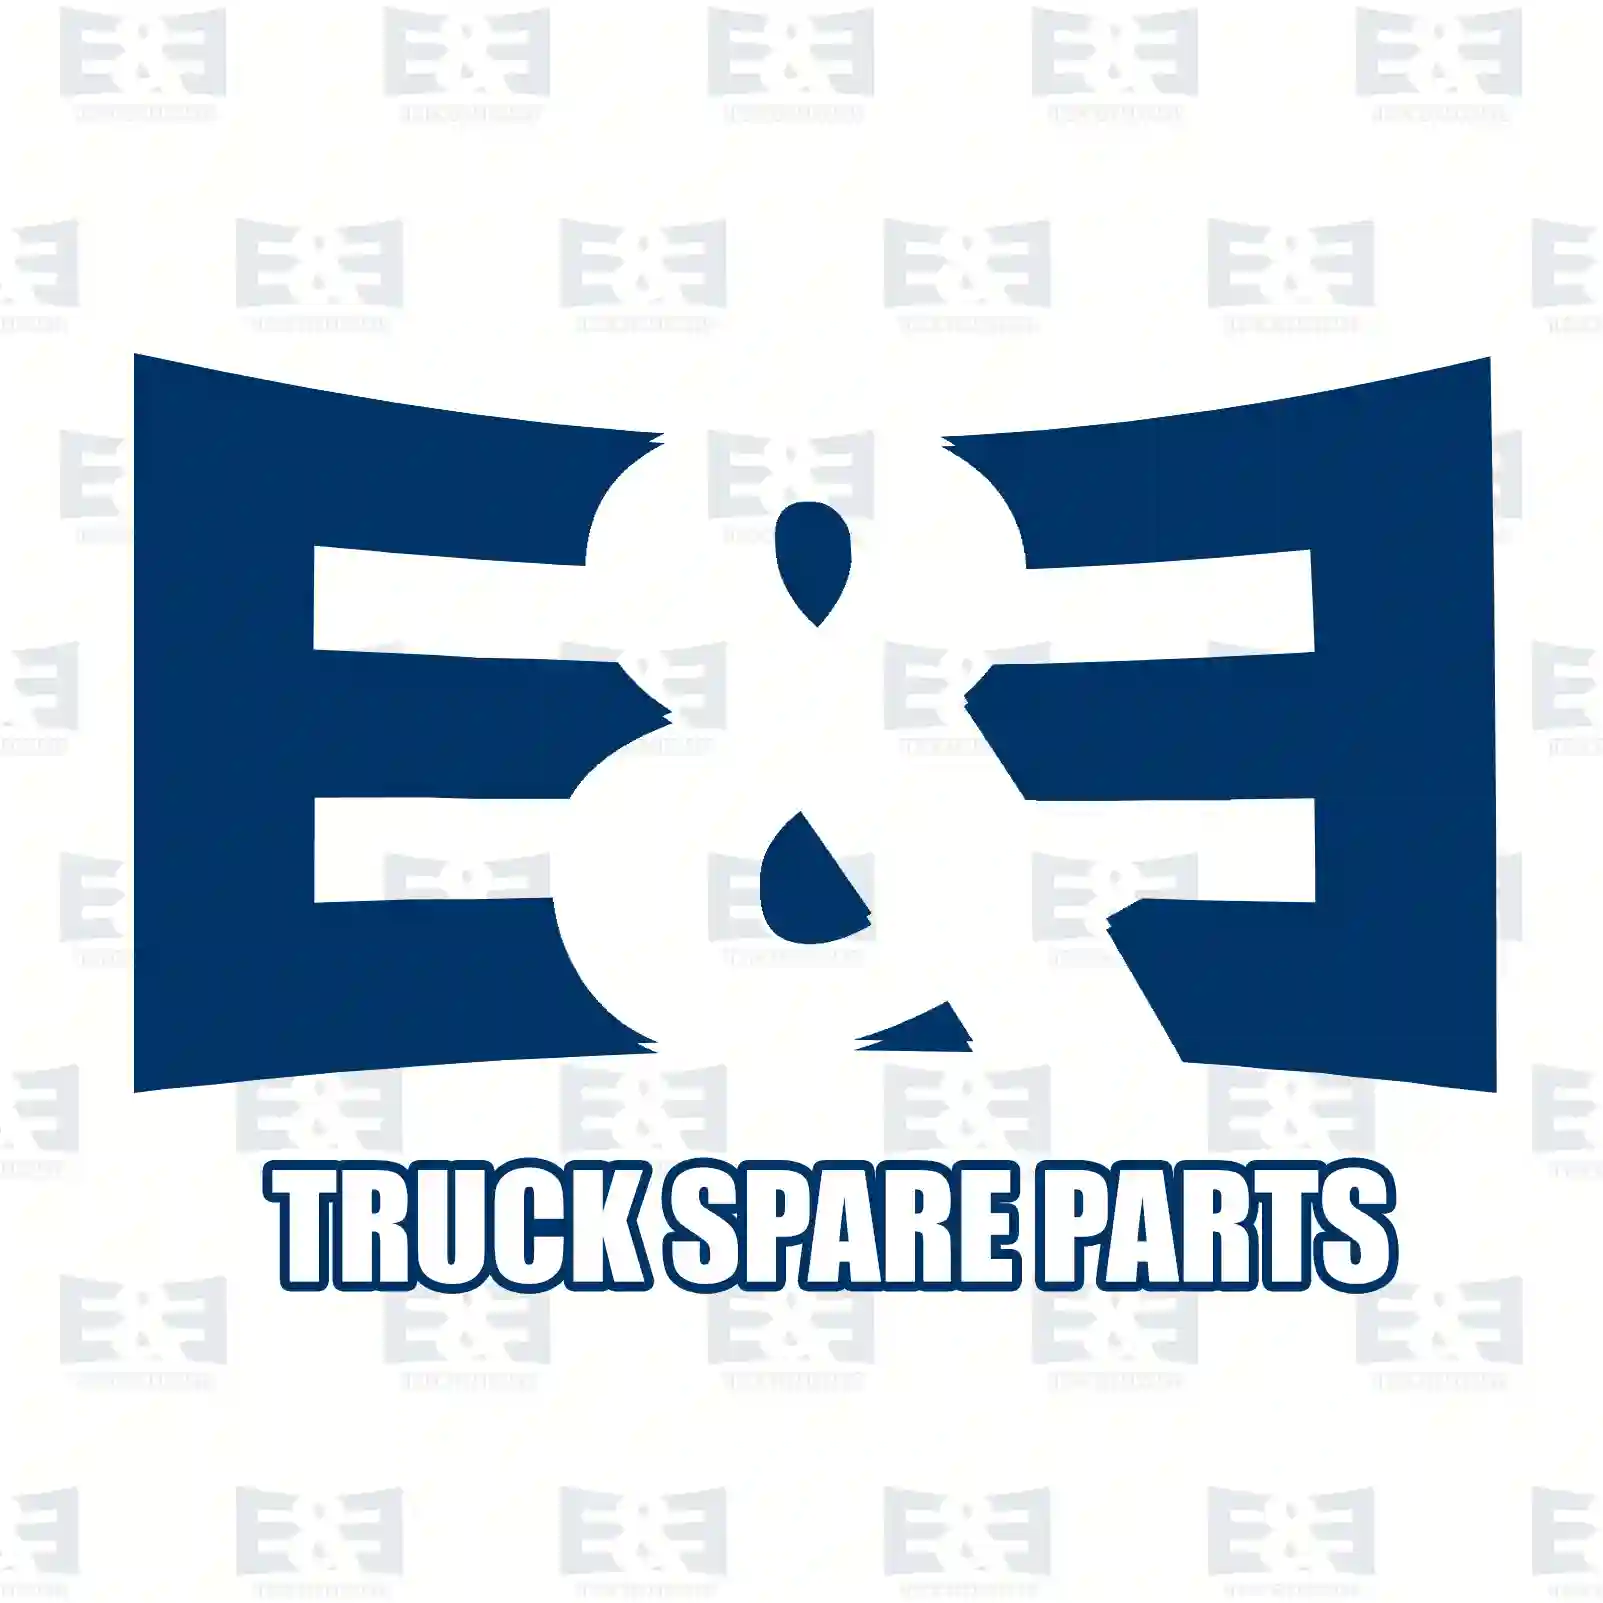 V-stay, right, 2E2283274, 3563301510, 6133300110, ZG41882-0008 ||  2E2283274 E&E Truck Spare Parts | Truck Spare Parts, Auotomotive Spare Parts V-stay, right, 2E2283274, 3563301510, 6133300110, ZG41882-0008 ||  2E2283274 E&E Truck Spare Parts | Truck Spare Parts, Auotomotive Spare Parts